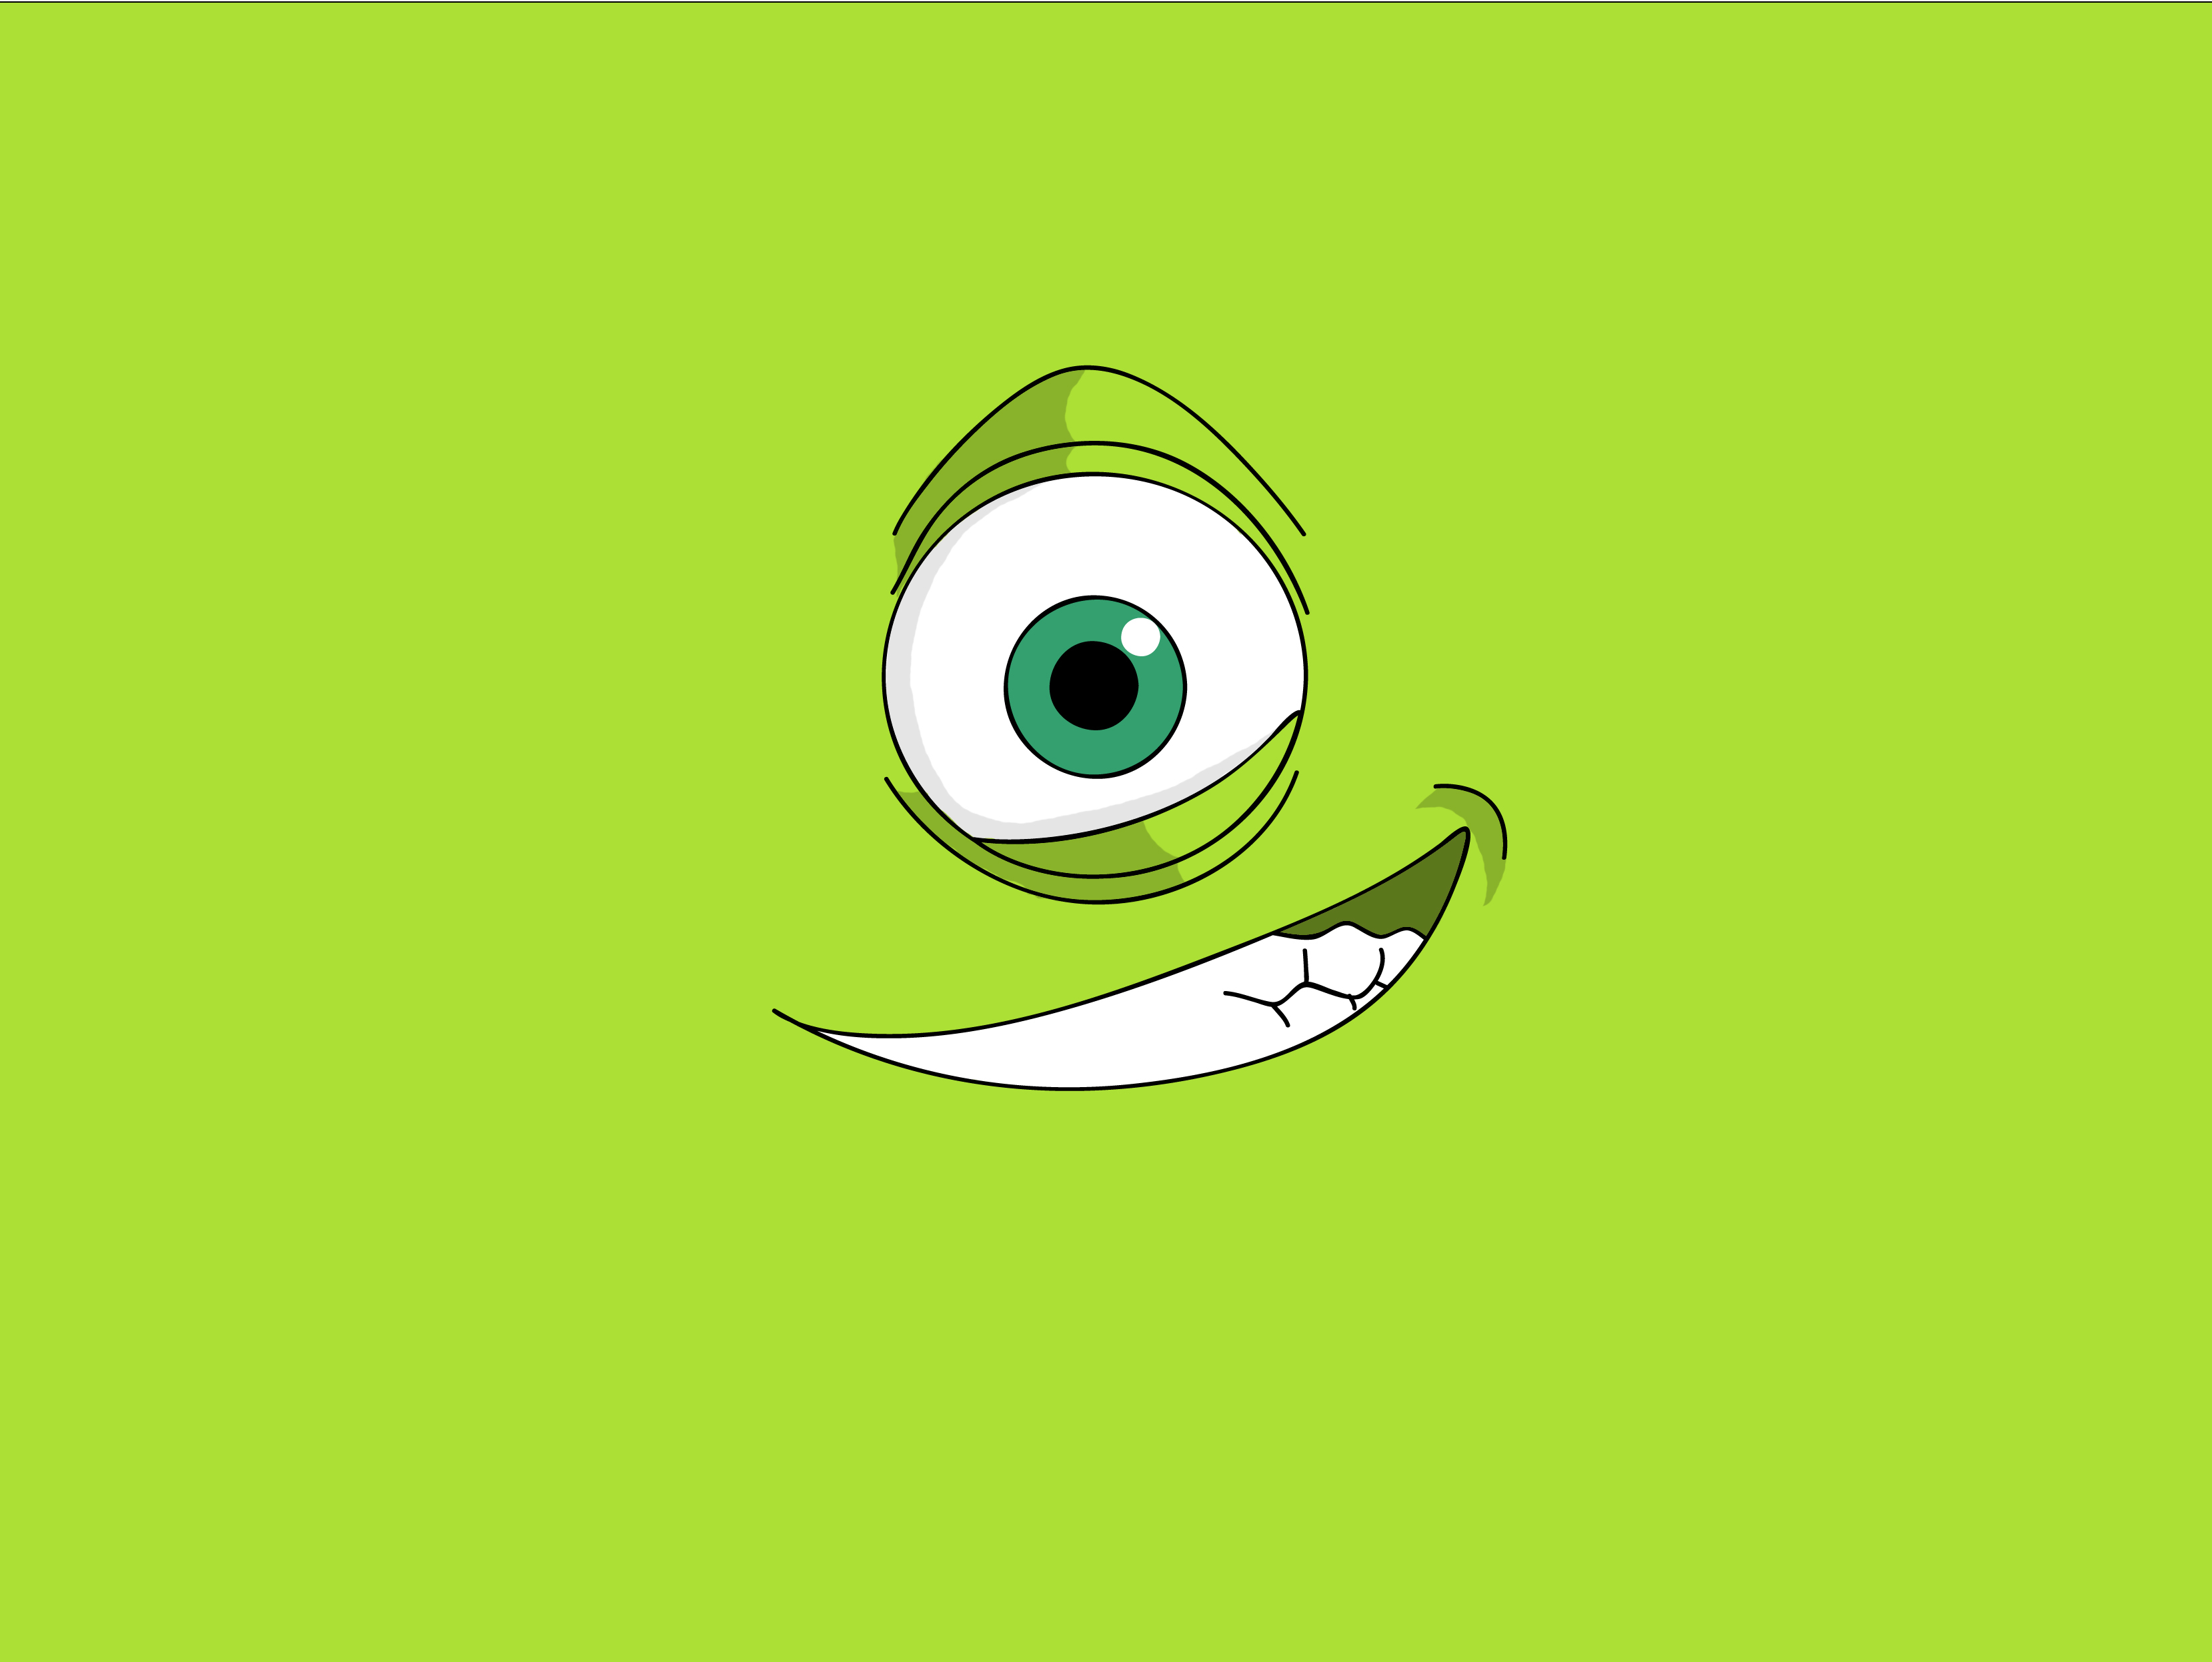 monster inc wallpaper hd,verde,cartone animato,occhio,sorridi,illustrazione